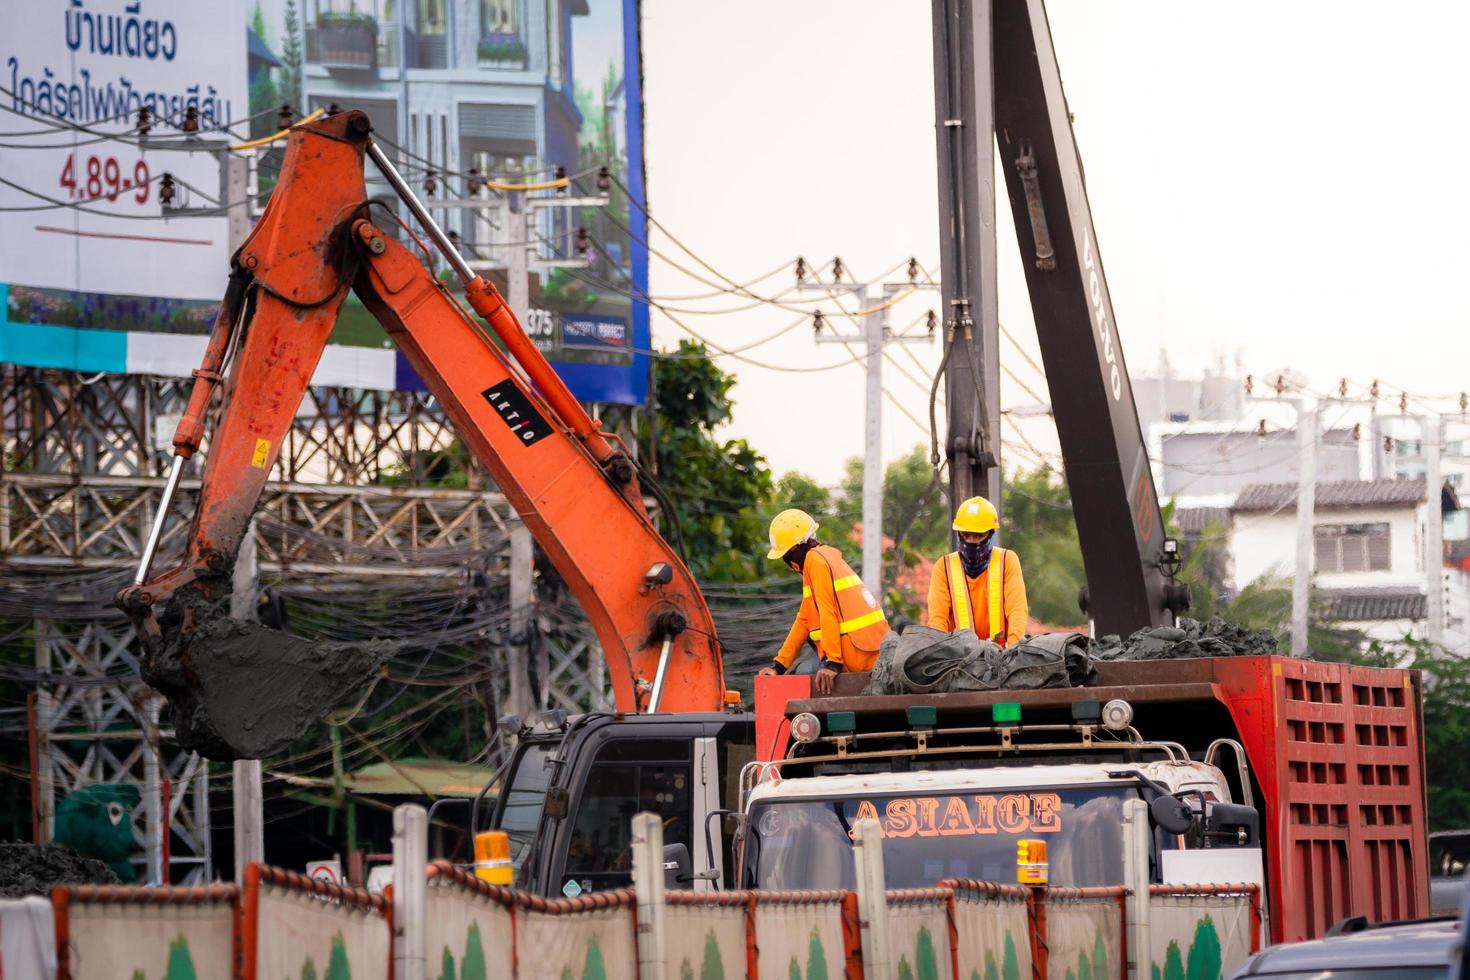 bangkok thailand 09.10.2019 - zwei vorarbeiter standen auf dem lkw, sie trugen gelbe helme, trugen orange langärmelige hemden zwei bagger arbeiten an großen industriemaschinen sicherheit bei der arbeit foto